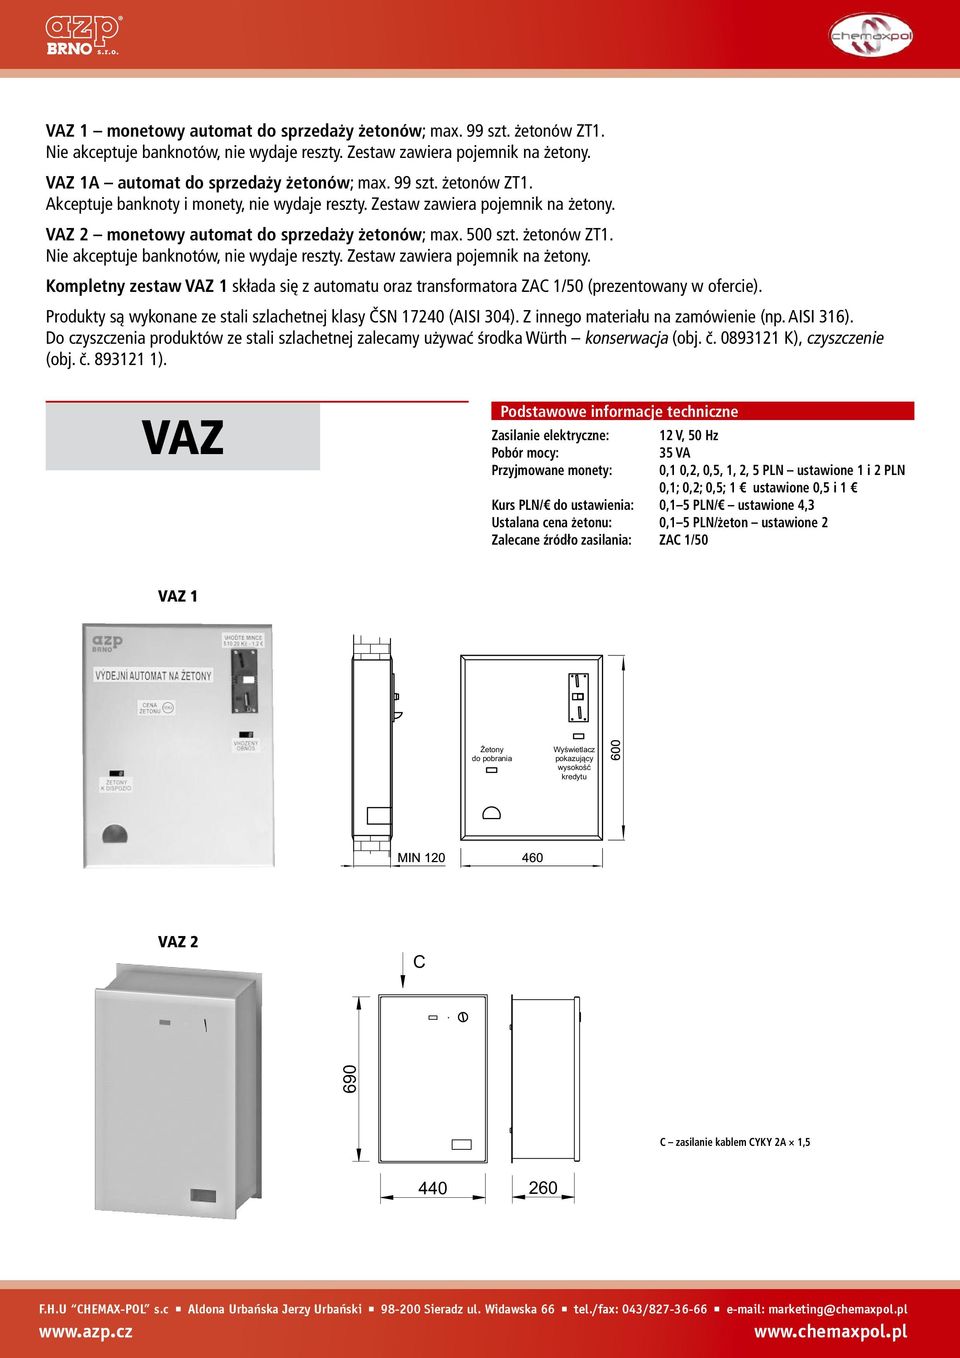 Kompletny zestaw VAZ 1 składa się z automatu oraz transformatora ZAC 1/50 (prezentowany w ofercie).